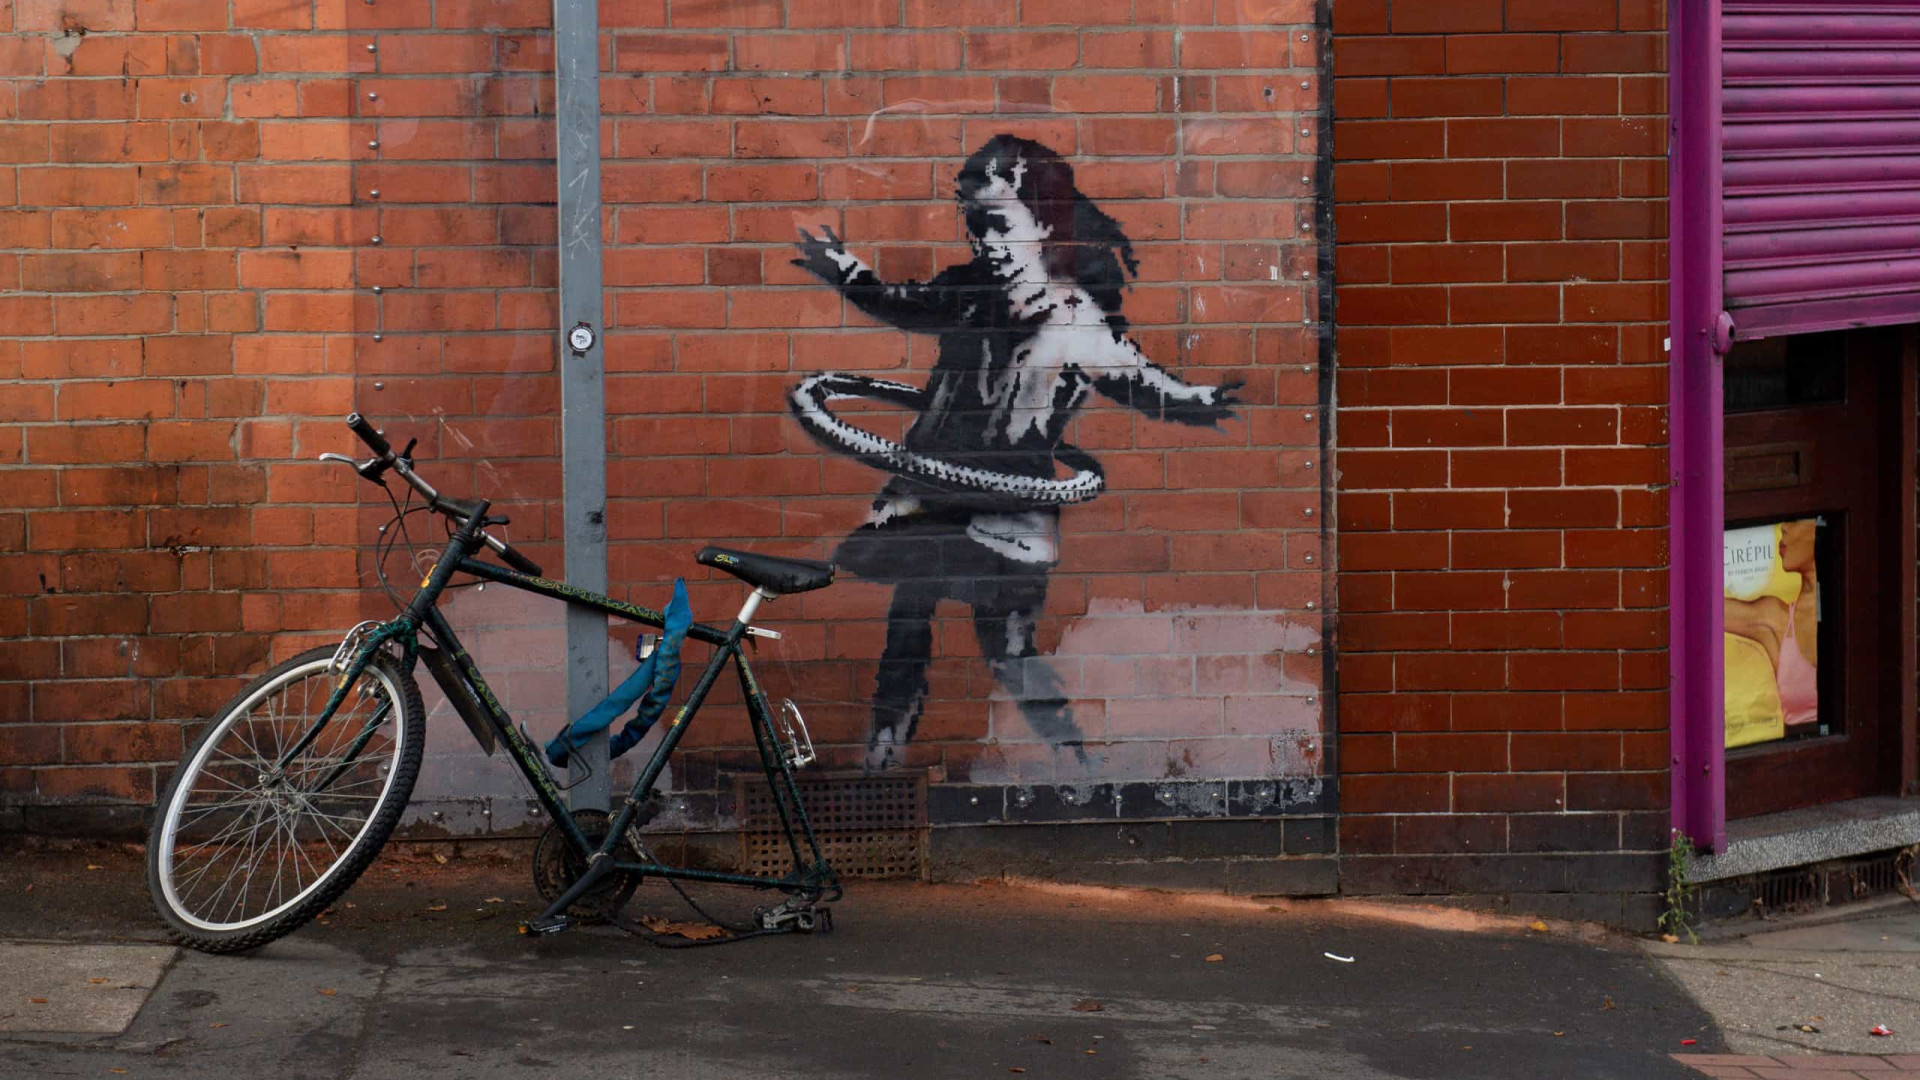 Parte de obra do artista Banksy é roubada na Inglaterra